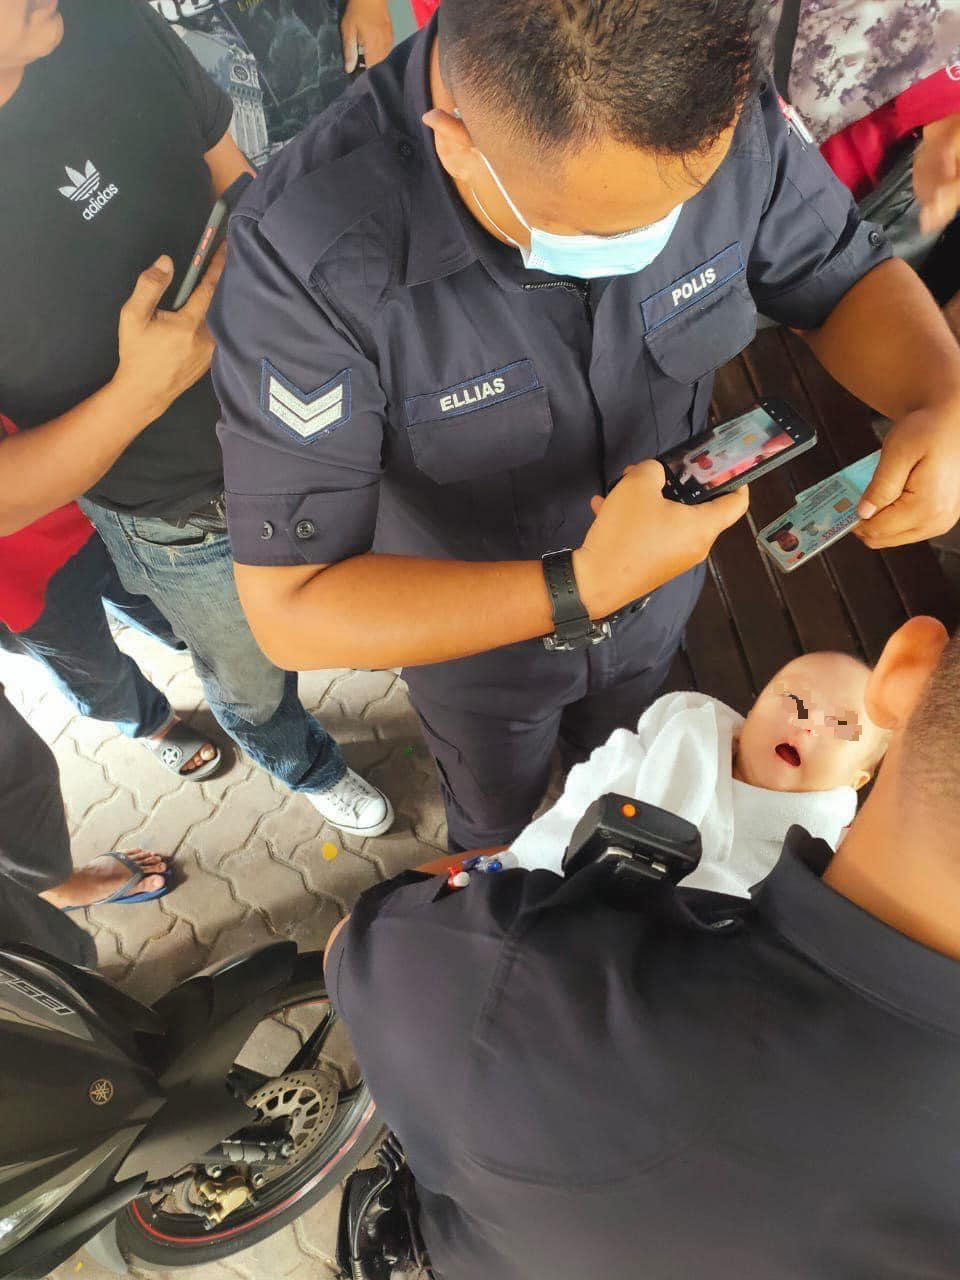 2个月大女婴被装在环保袋丢弃·民众发现救女婴一命